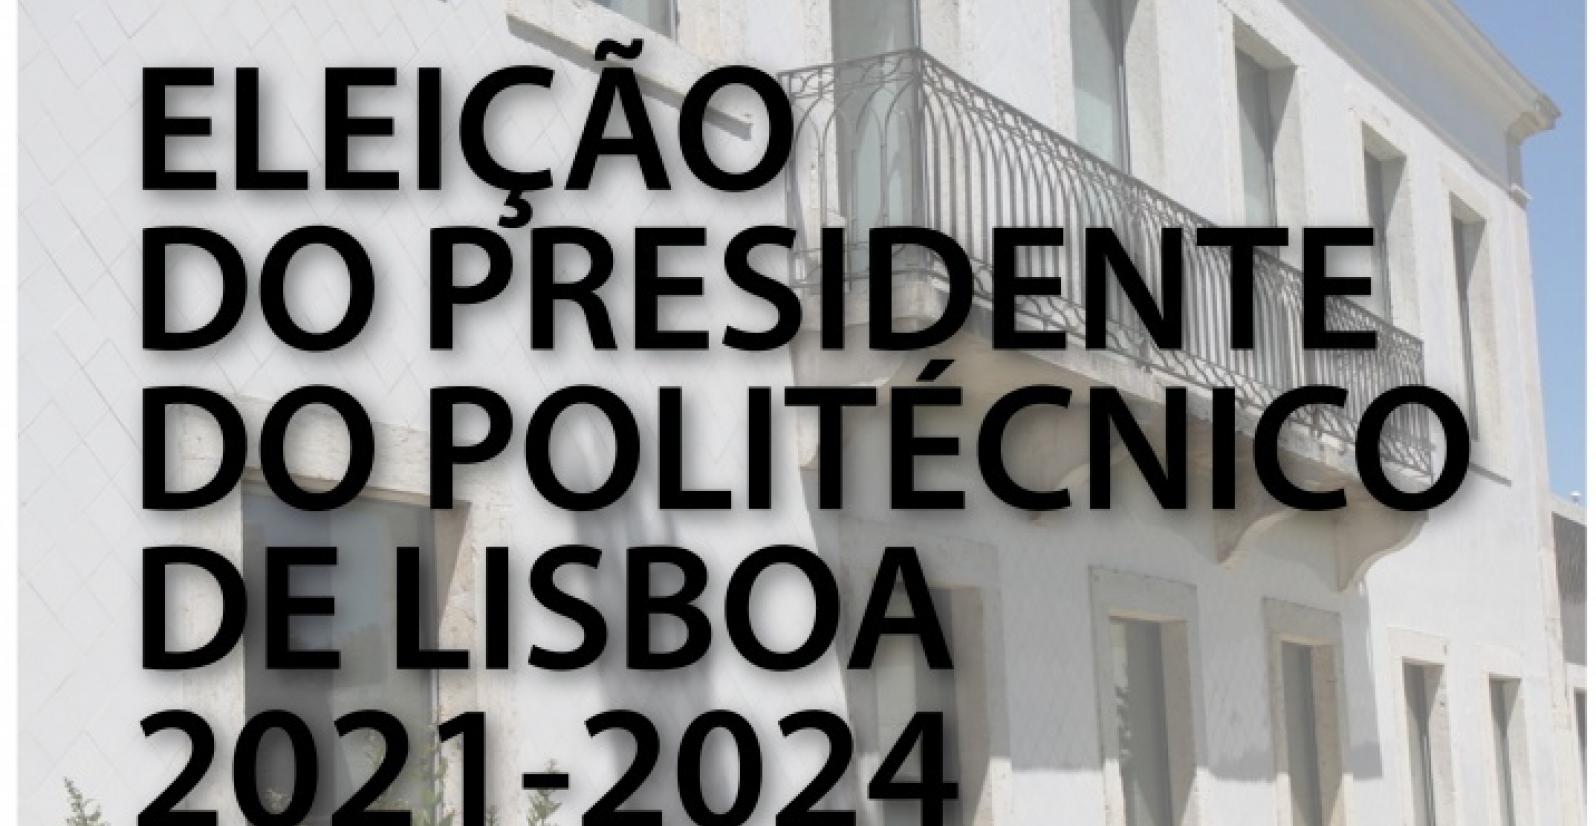 Eleição do Presidente do Politécnico de Lisboa